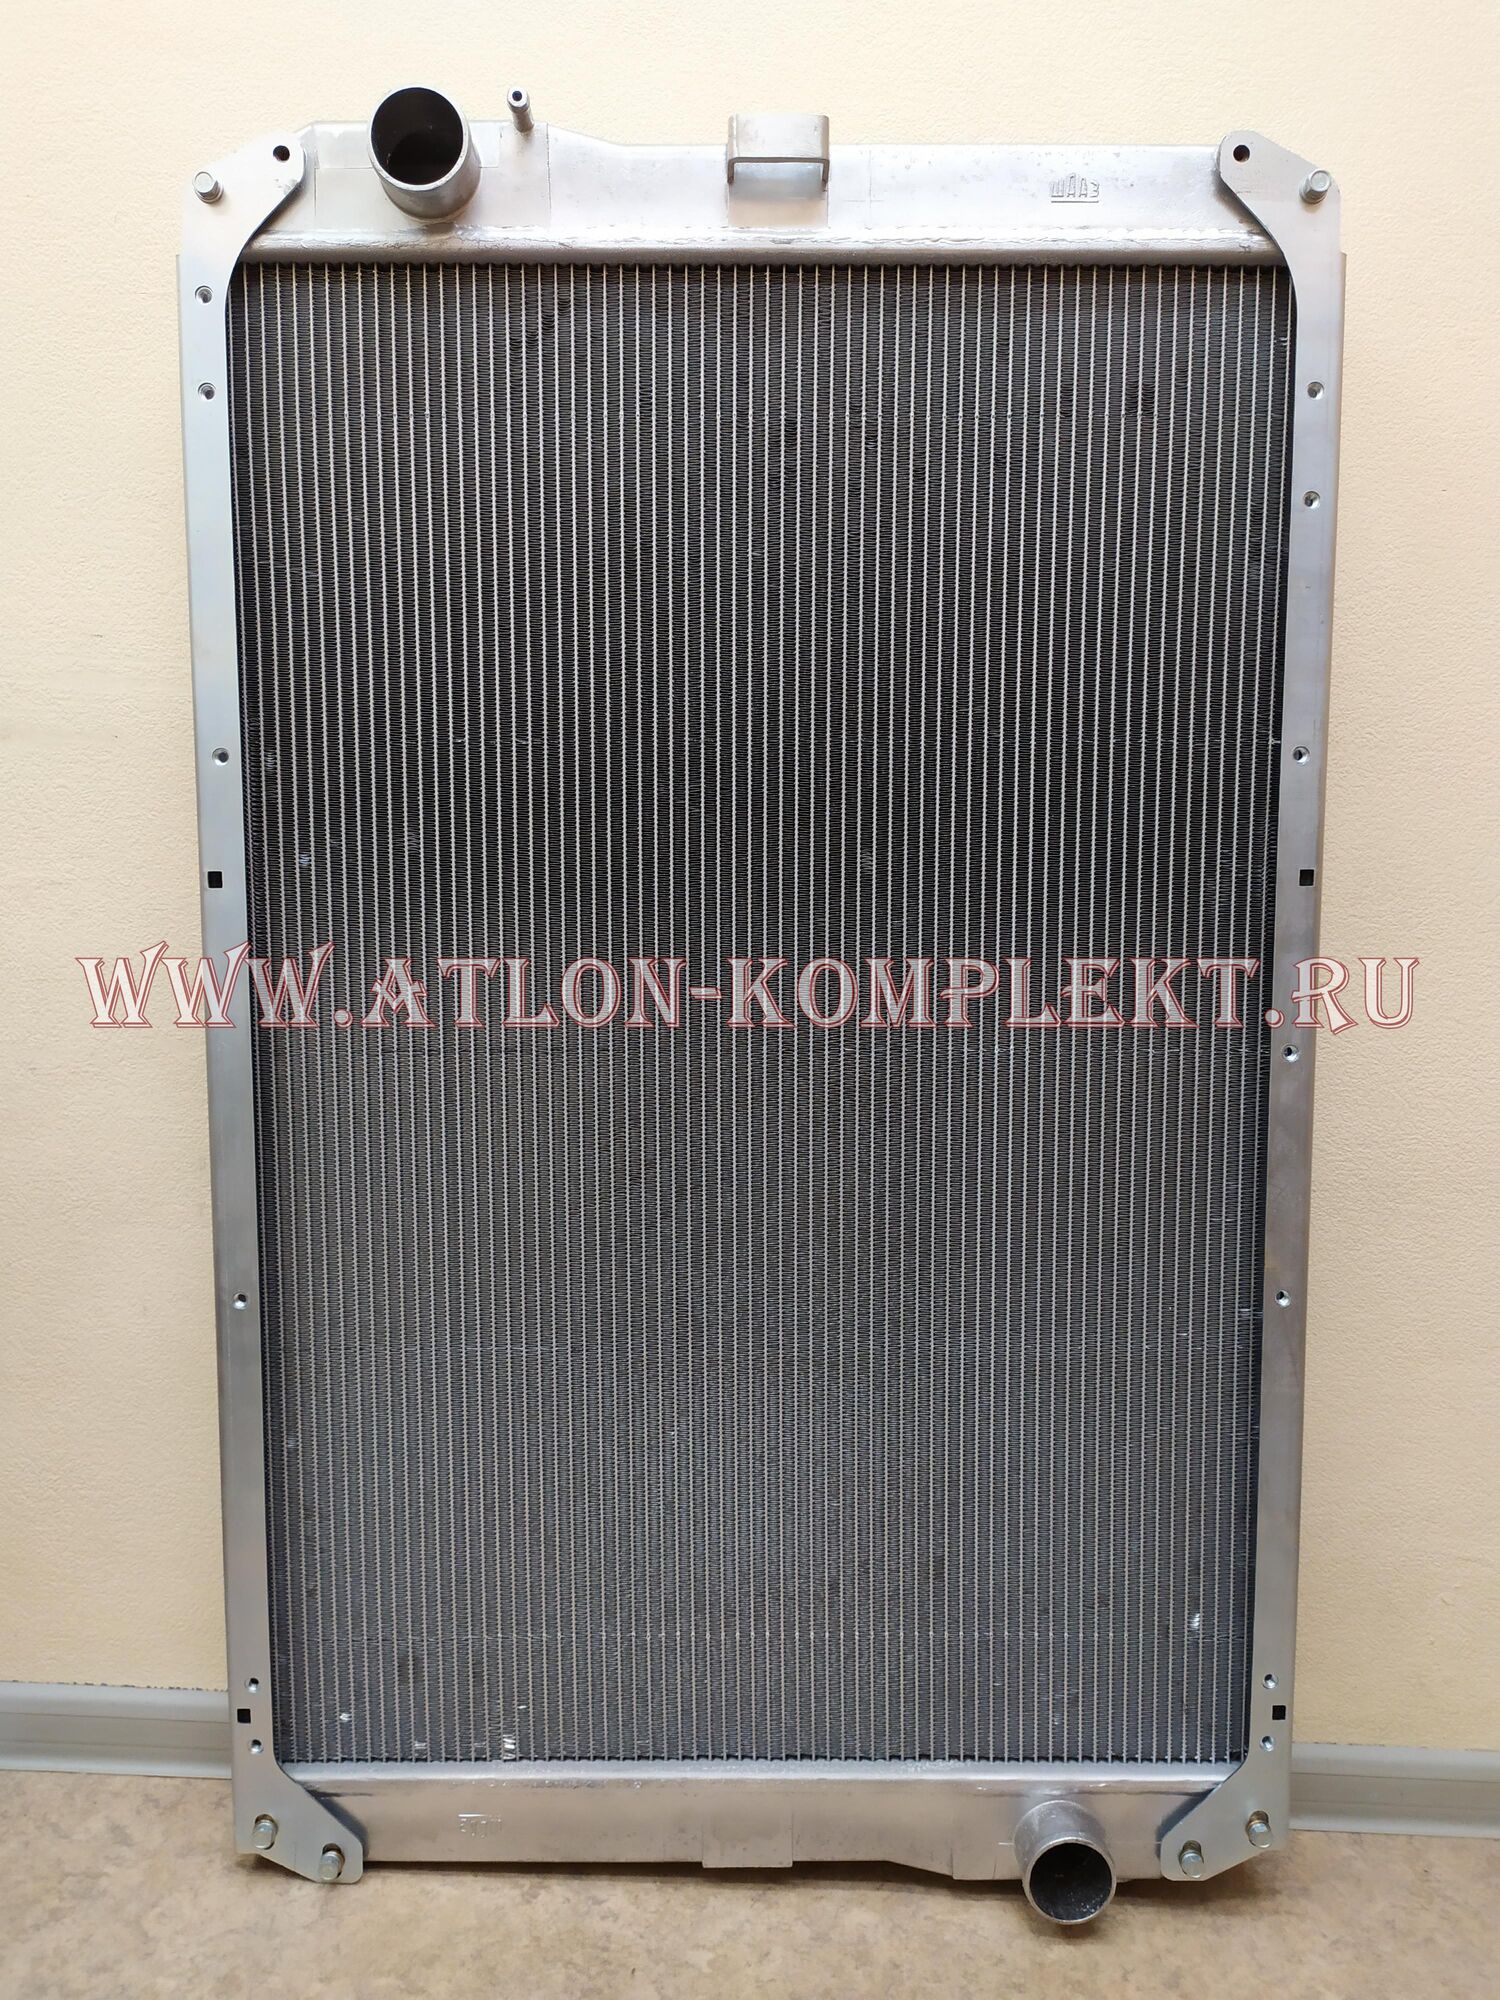 Радиатор для КАМАЗ-5490, -6520, -6580 алюминиевый 5490А-1301010